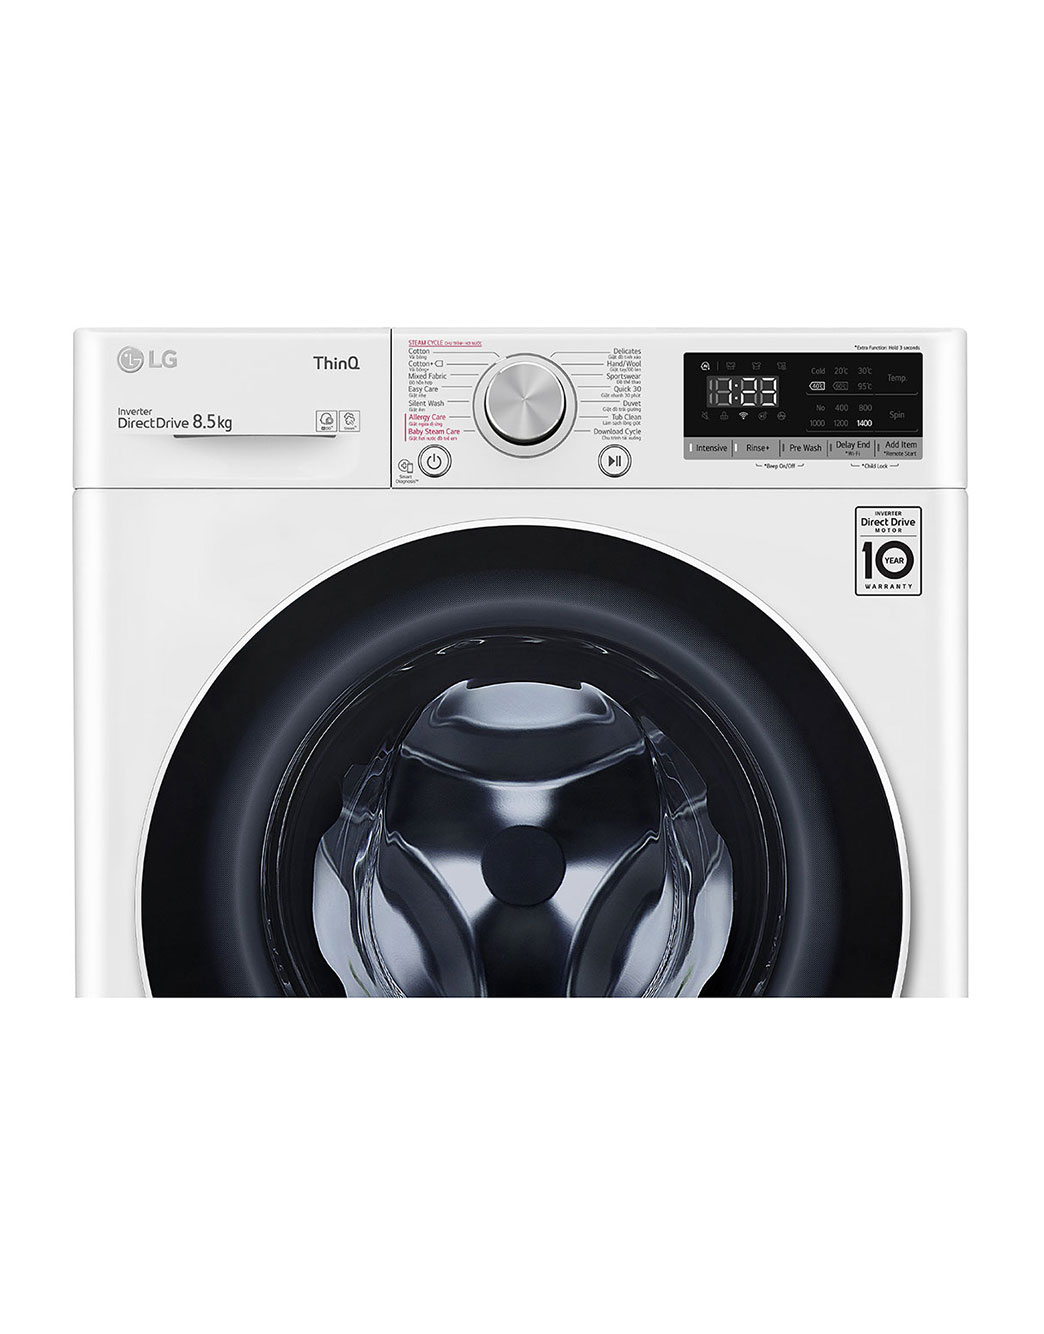 Máy giặt LG chất lượng cao, tiện lợi và hiệu quả. Hãy xem hình ảnh sản phẩm và dễ dàng lựa chọn cho không gian sống của bạn, giúp bạn tiết kiệm thời gian và công sức trong quá trình giặt giũ.